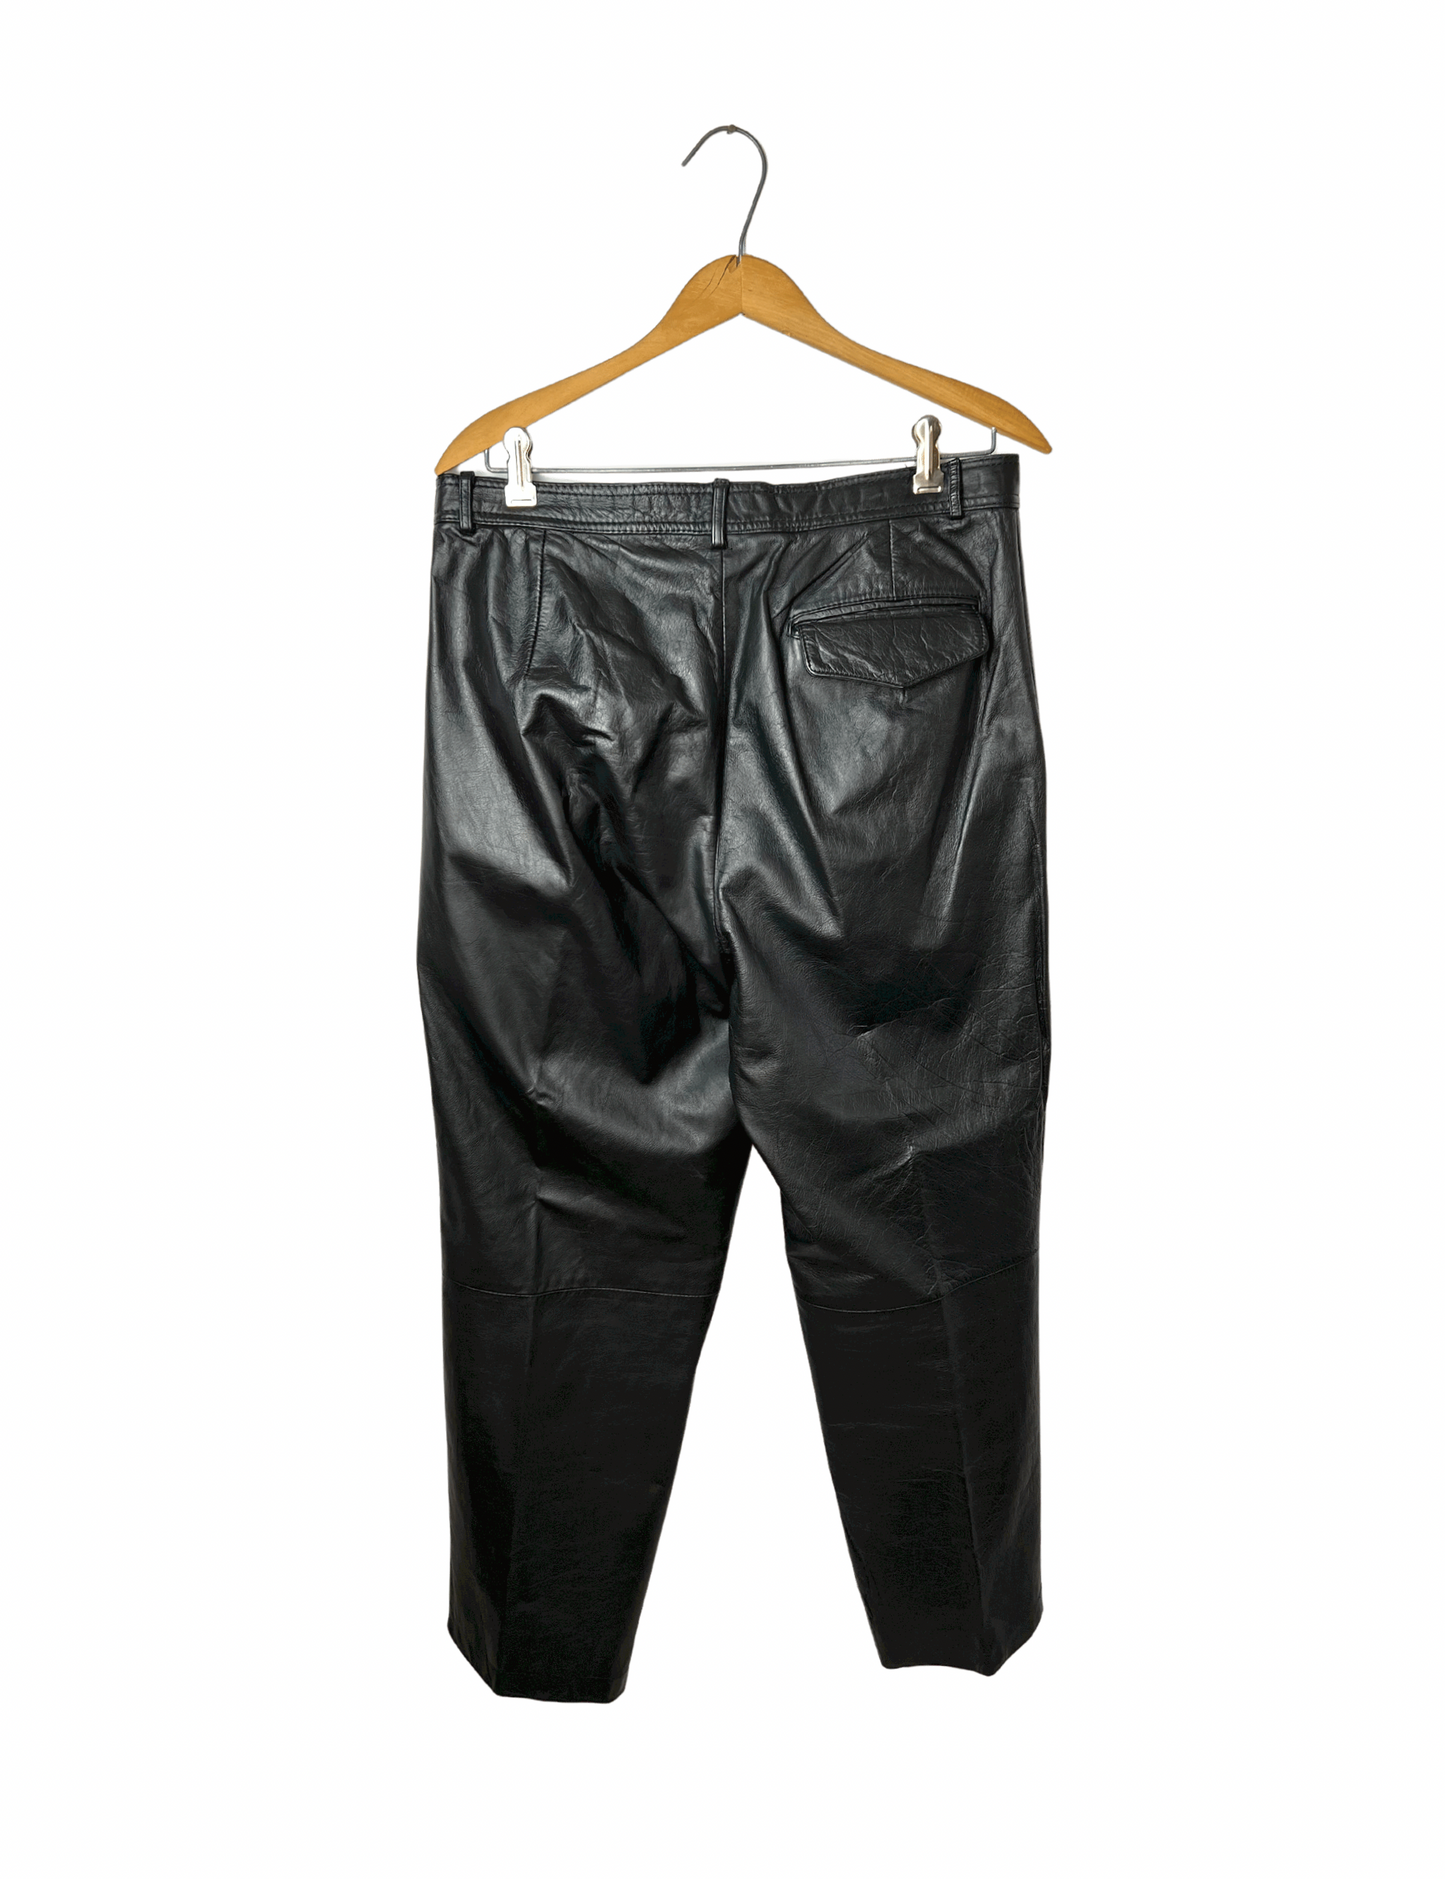 Vintage 80’s Black Leather Motorcycle Pant